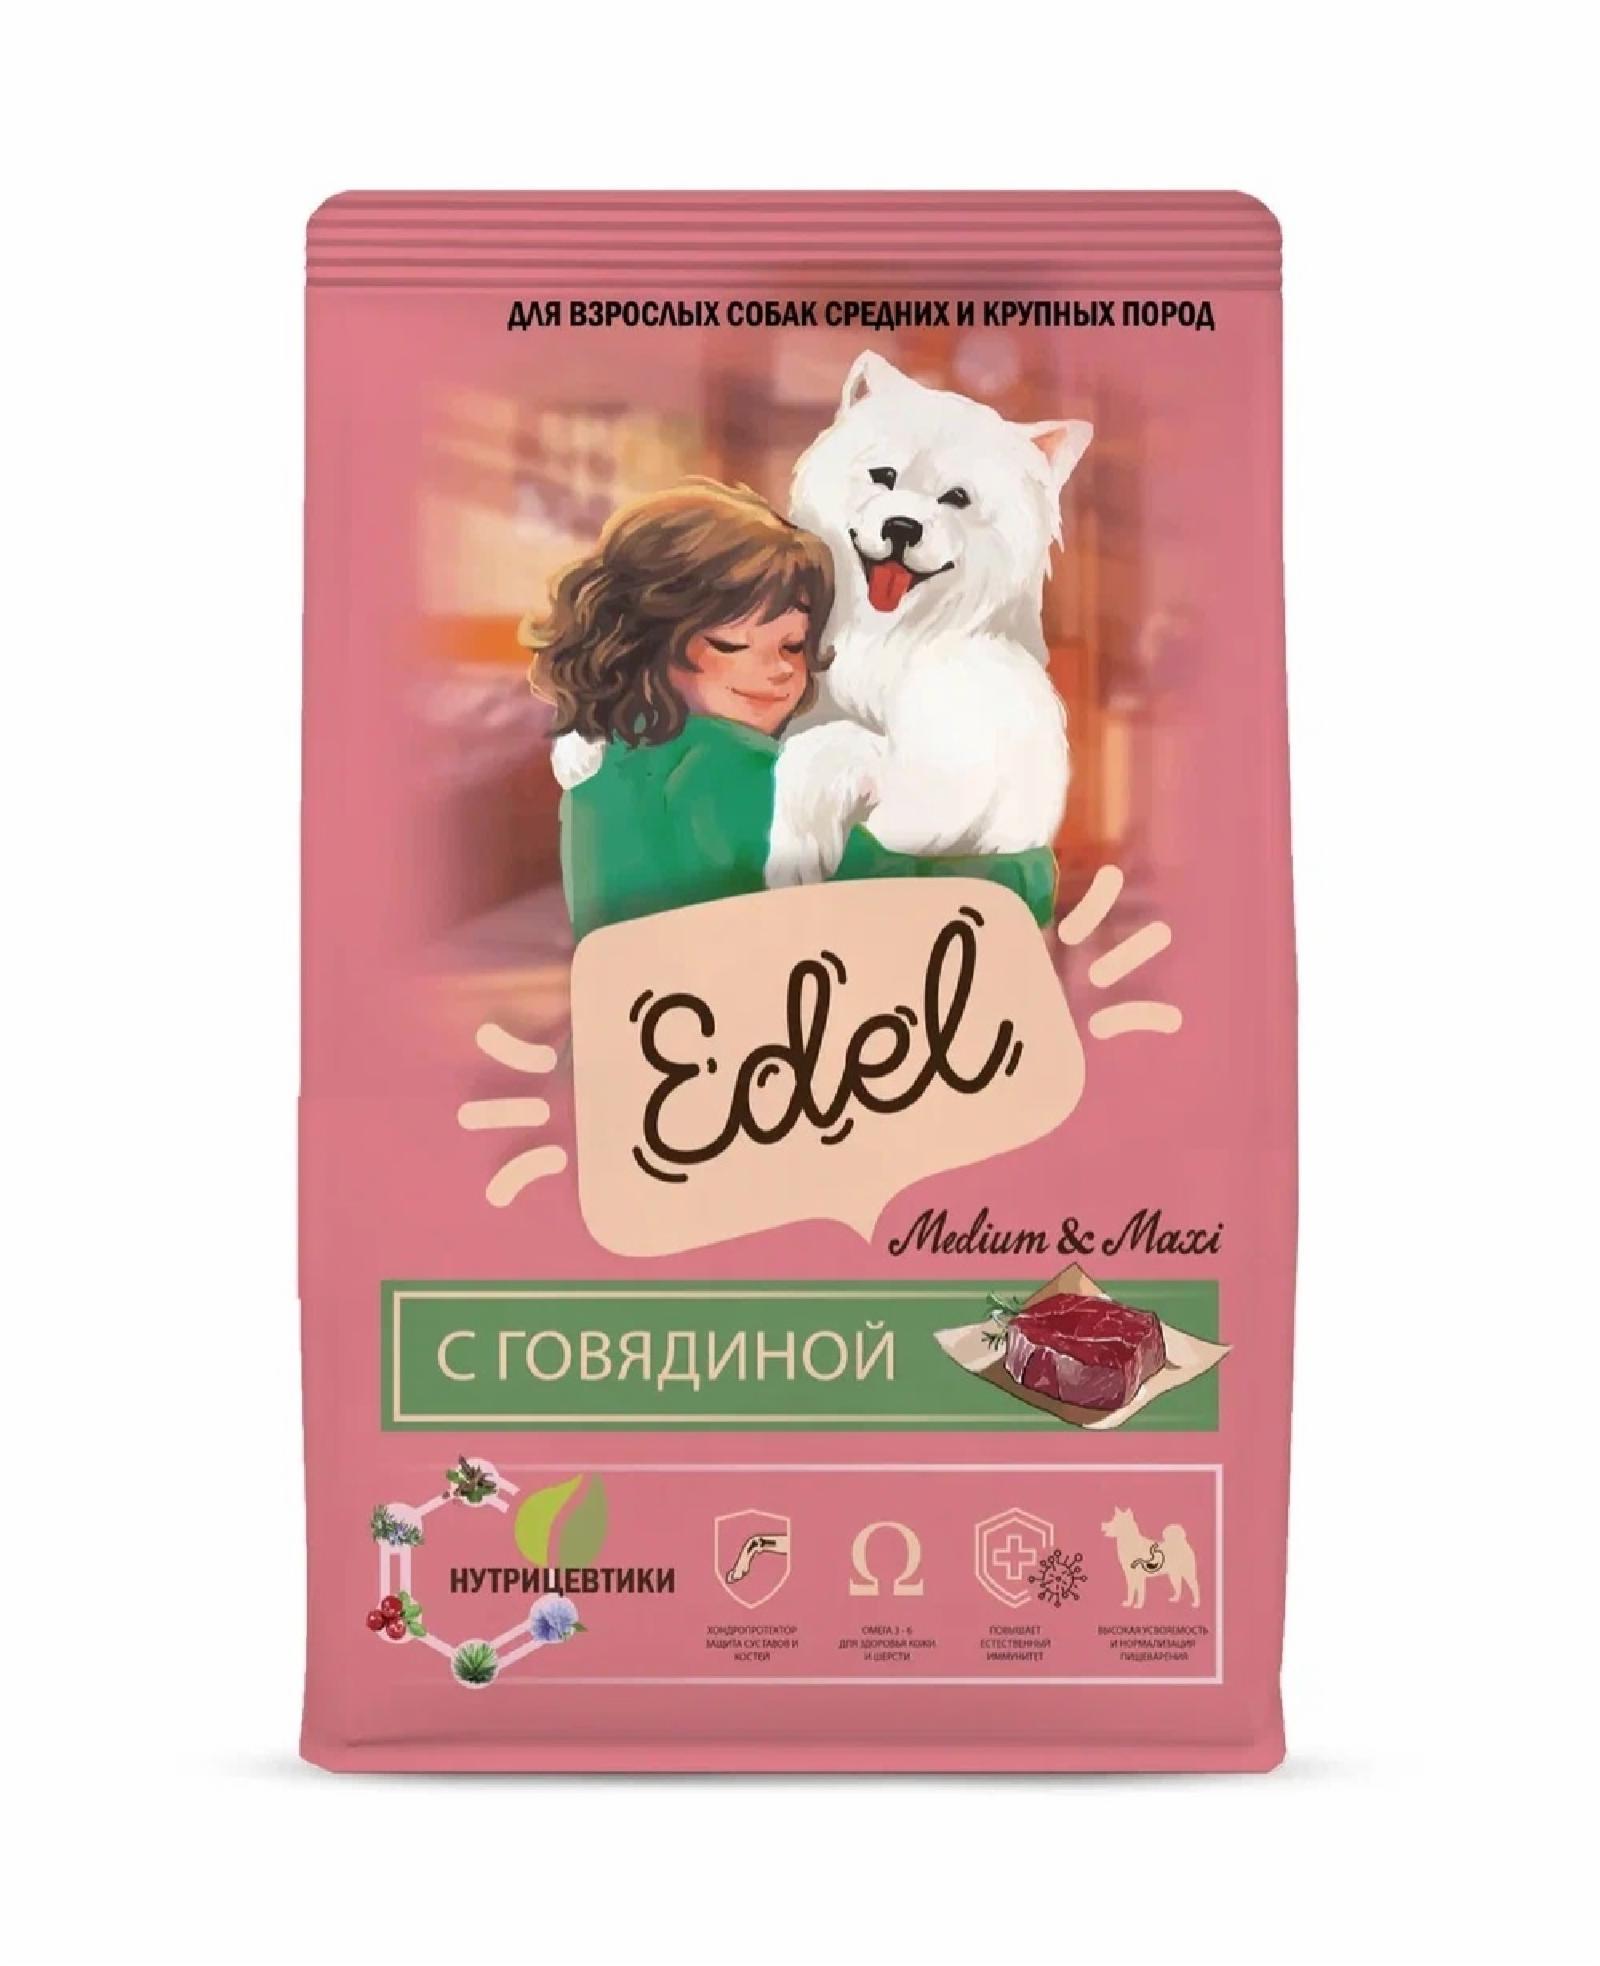 Edel | Полнорационный сухой корм для взрослых собак средних и крупных пород с говядиной. 12 кг